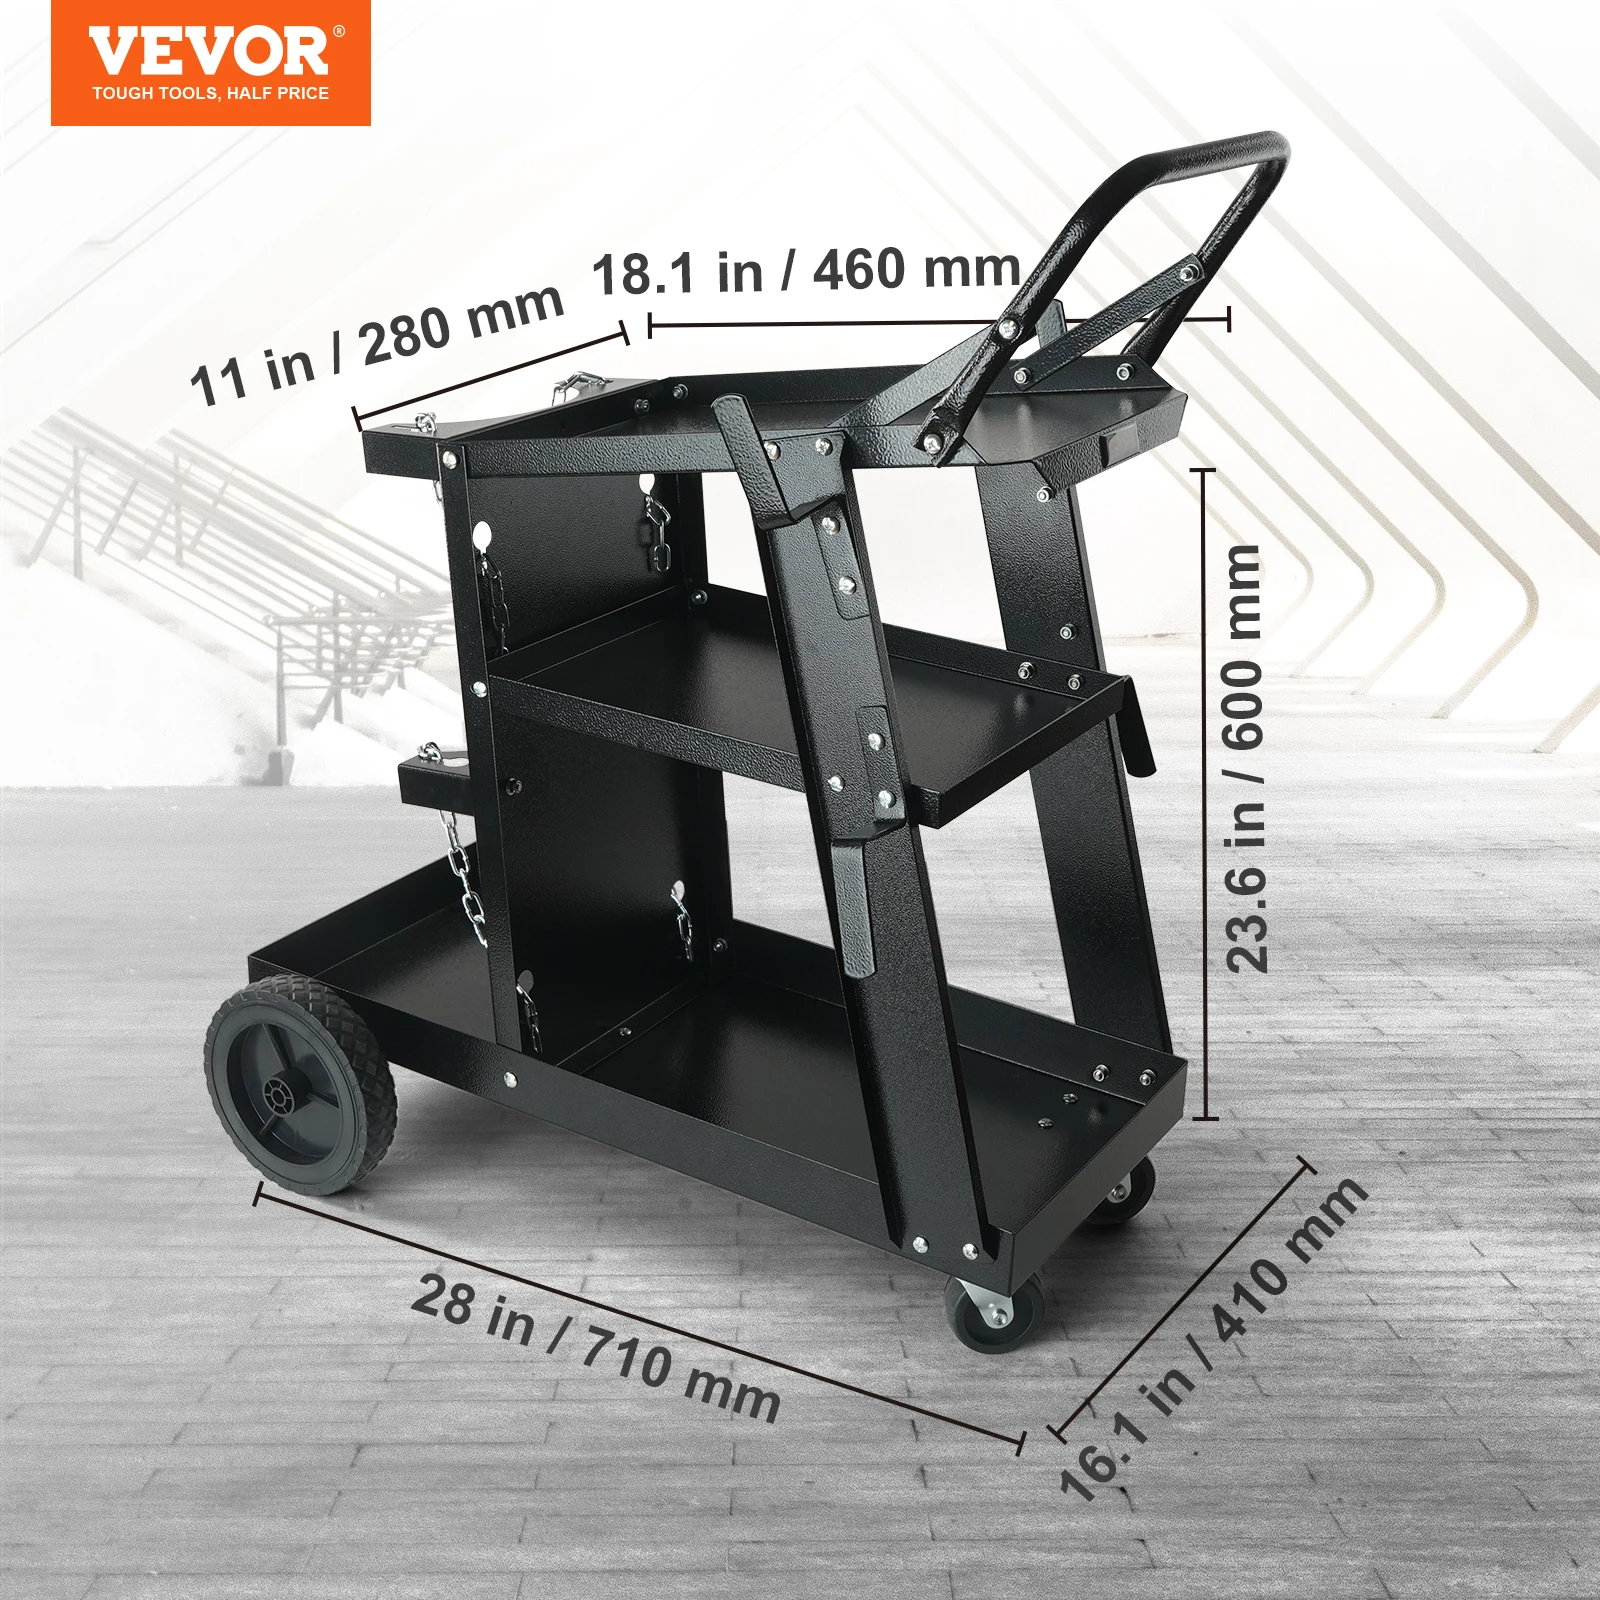 VEVOR Welding Cart 3-Tier Welder Cart with Swivel Wheels Safety Chains Rolling Tank Storage for Plasma Cutter Welding Machine